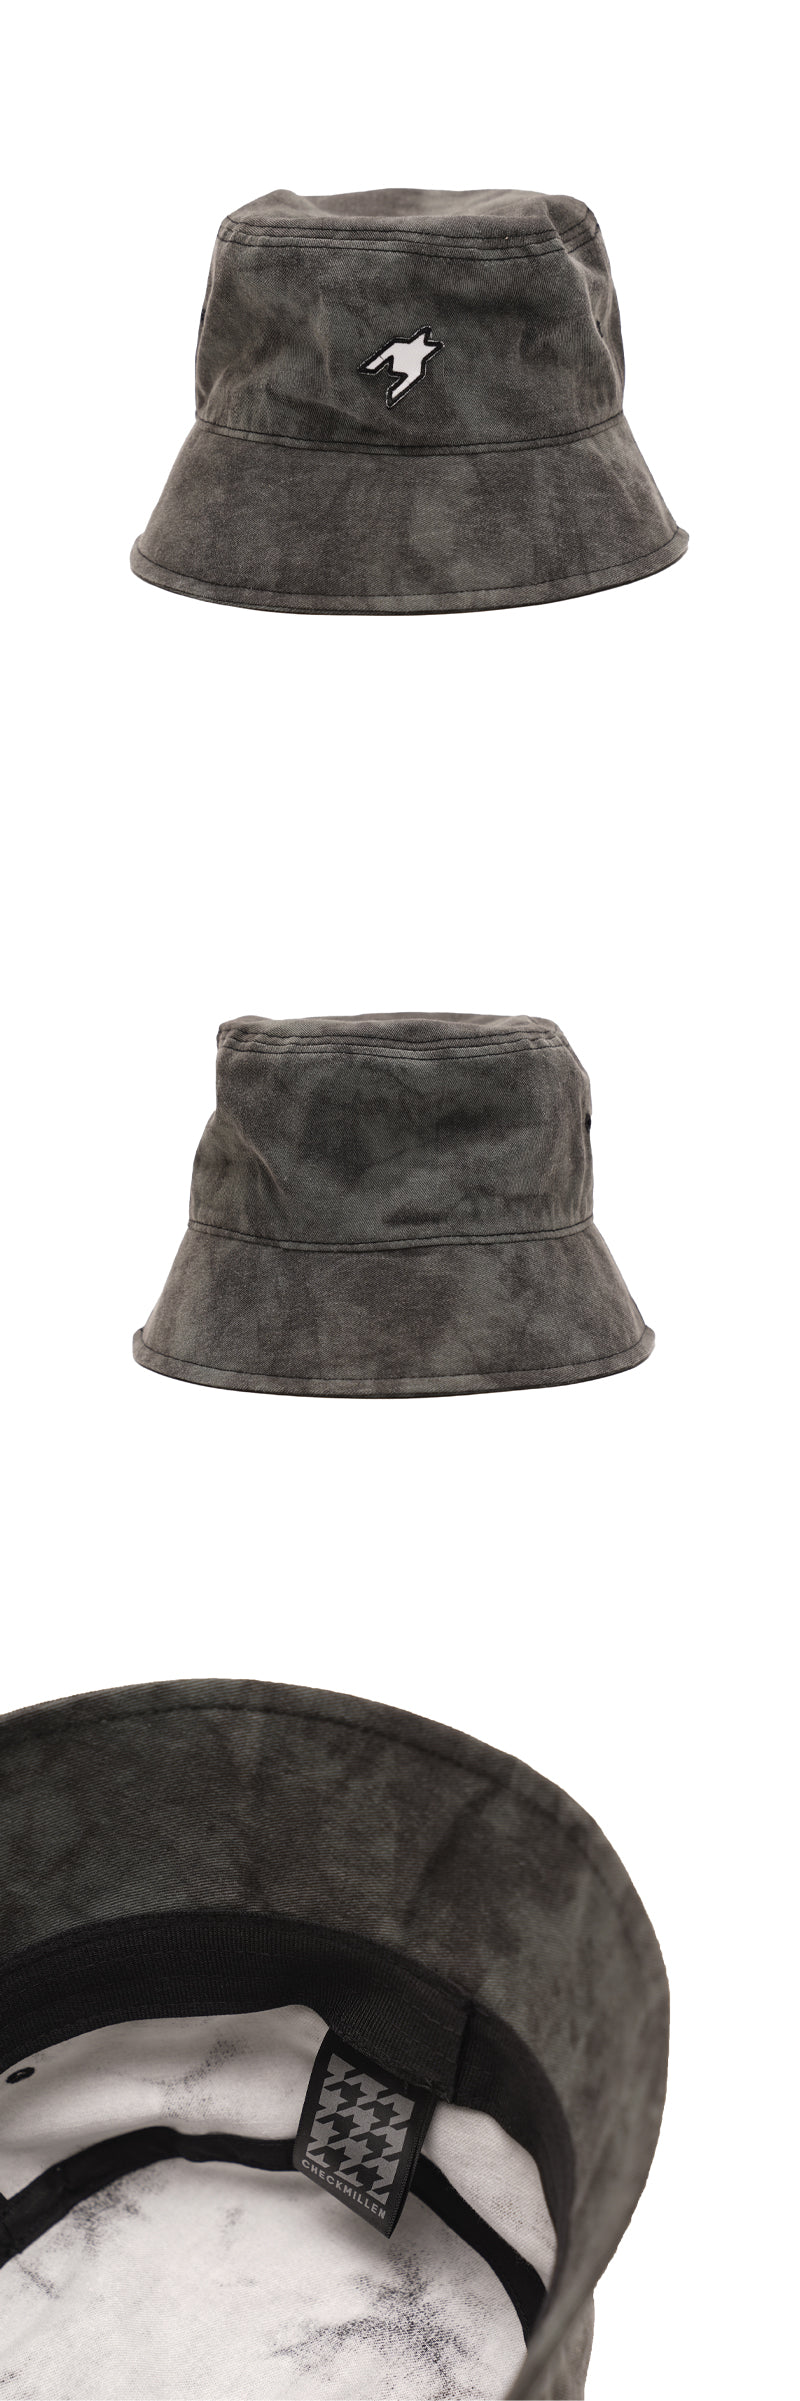 ロゴバケットハット / Logo Bucket Hat (Charcoal)